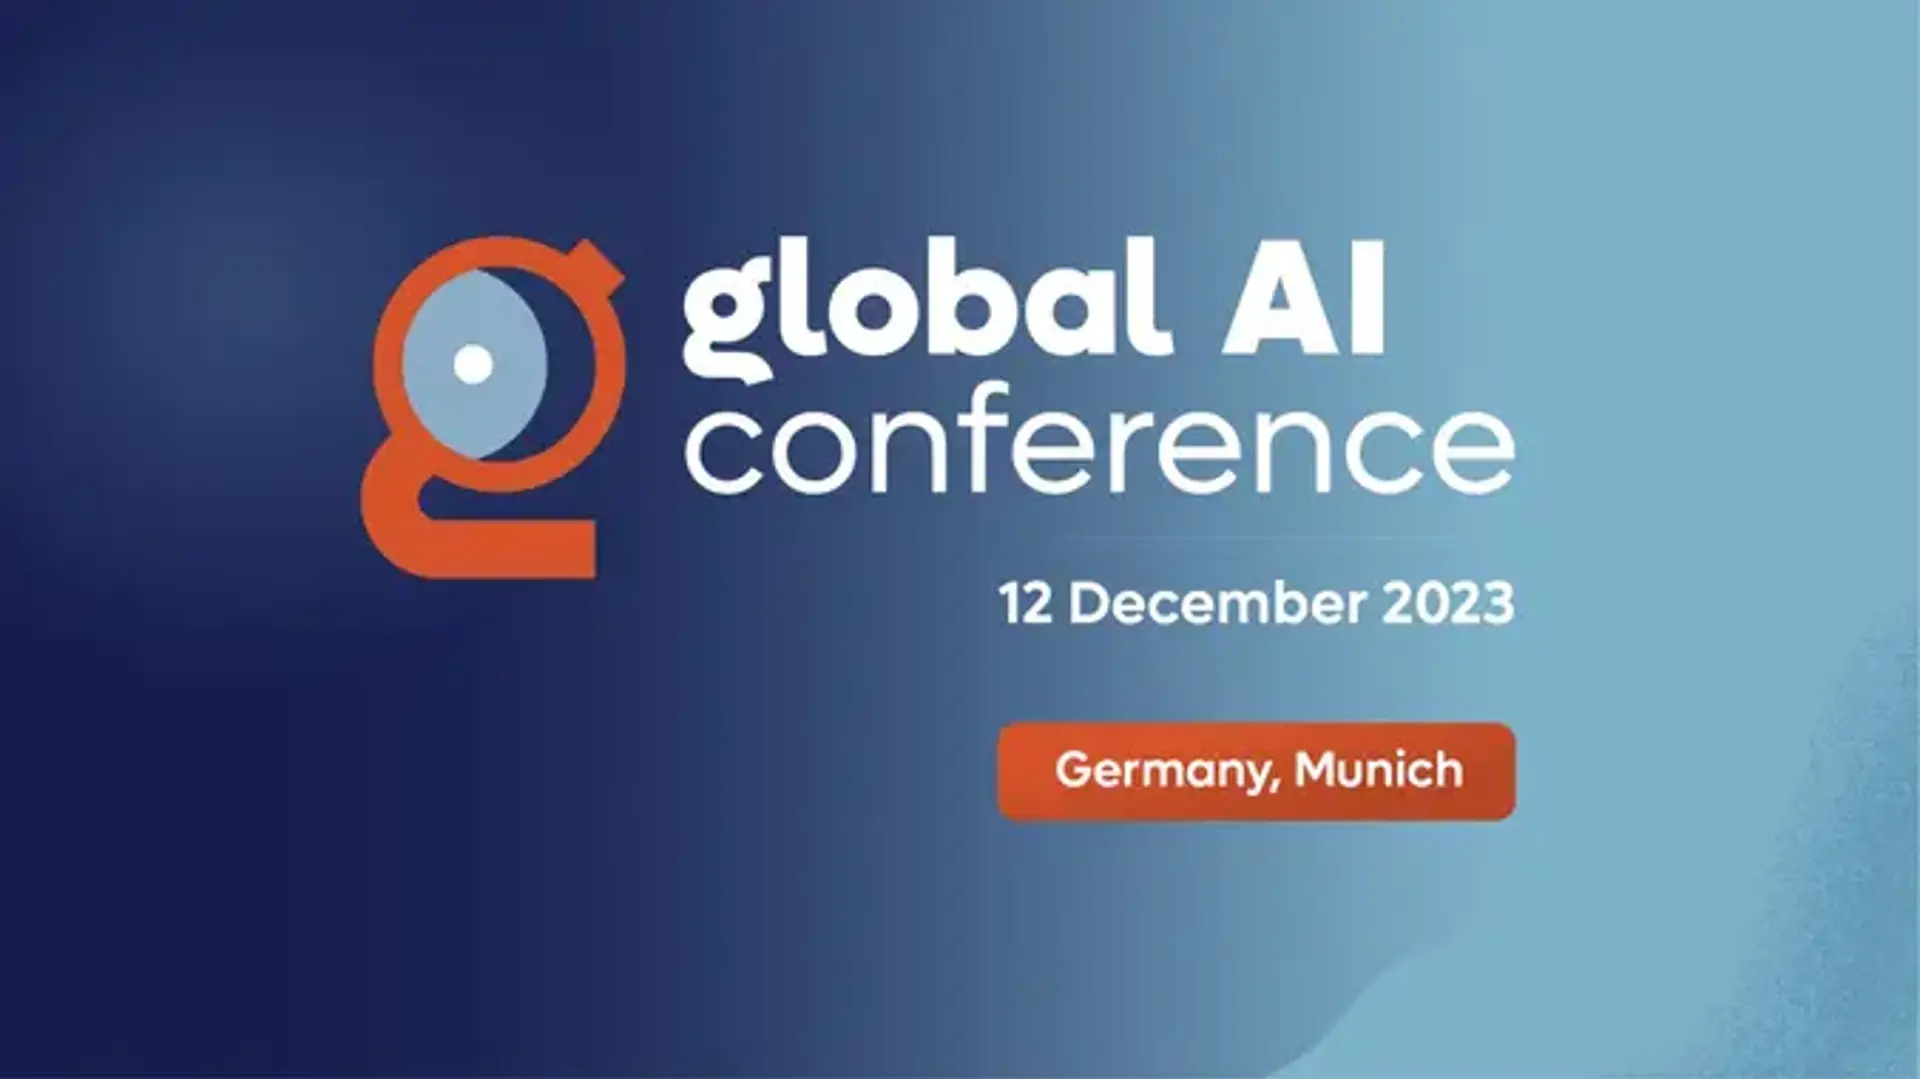 Global AI Conference - Munich, Germany